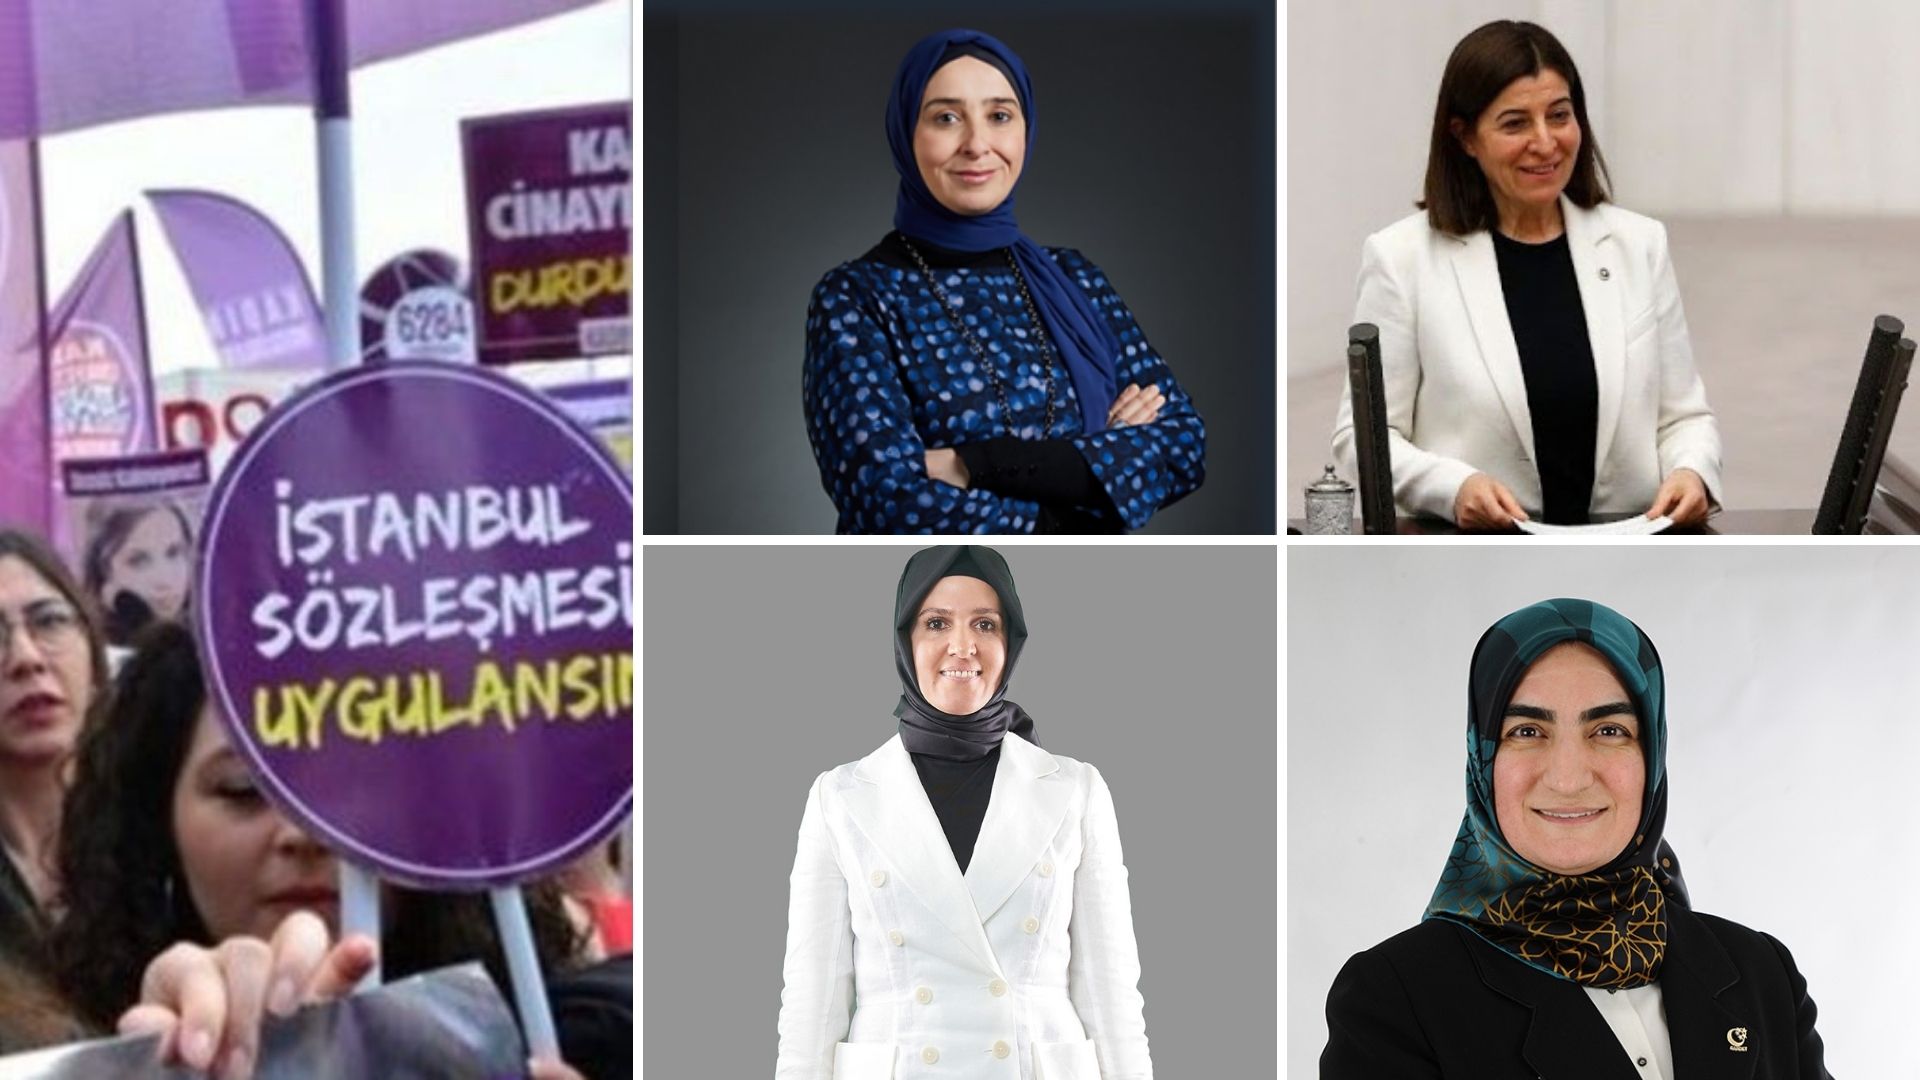 DOSYA | Muhafazakar kadınlarla İstanbul Sözleşmesi'ni konuştuk: Uygulanmaması bir vebaldir